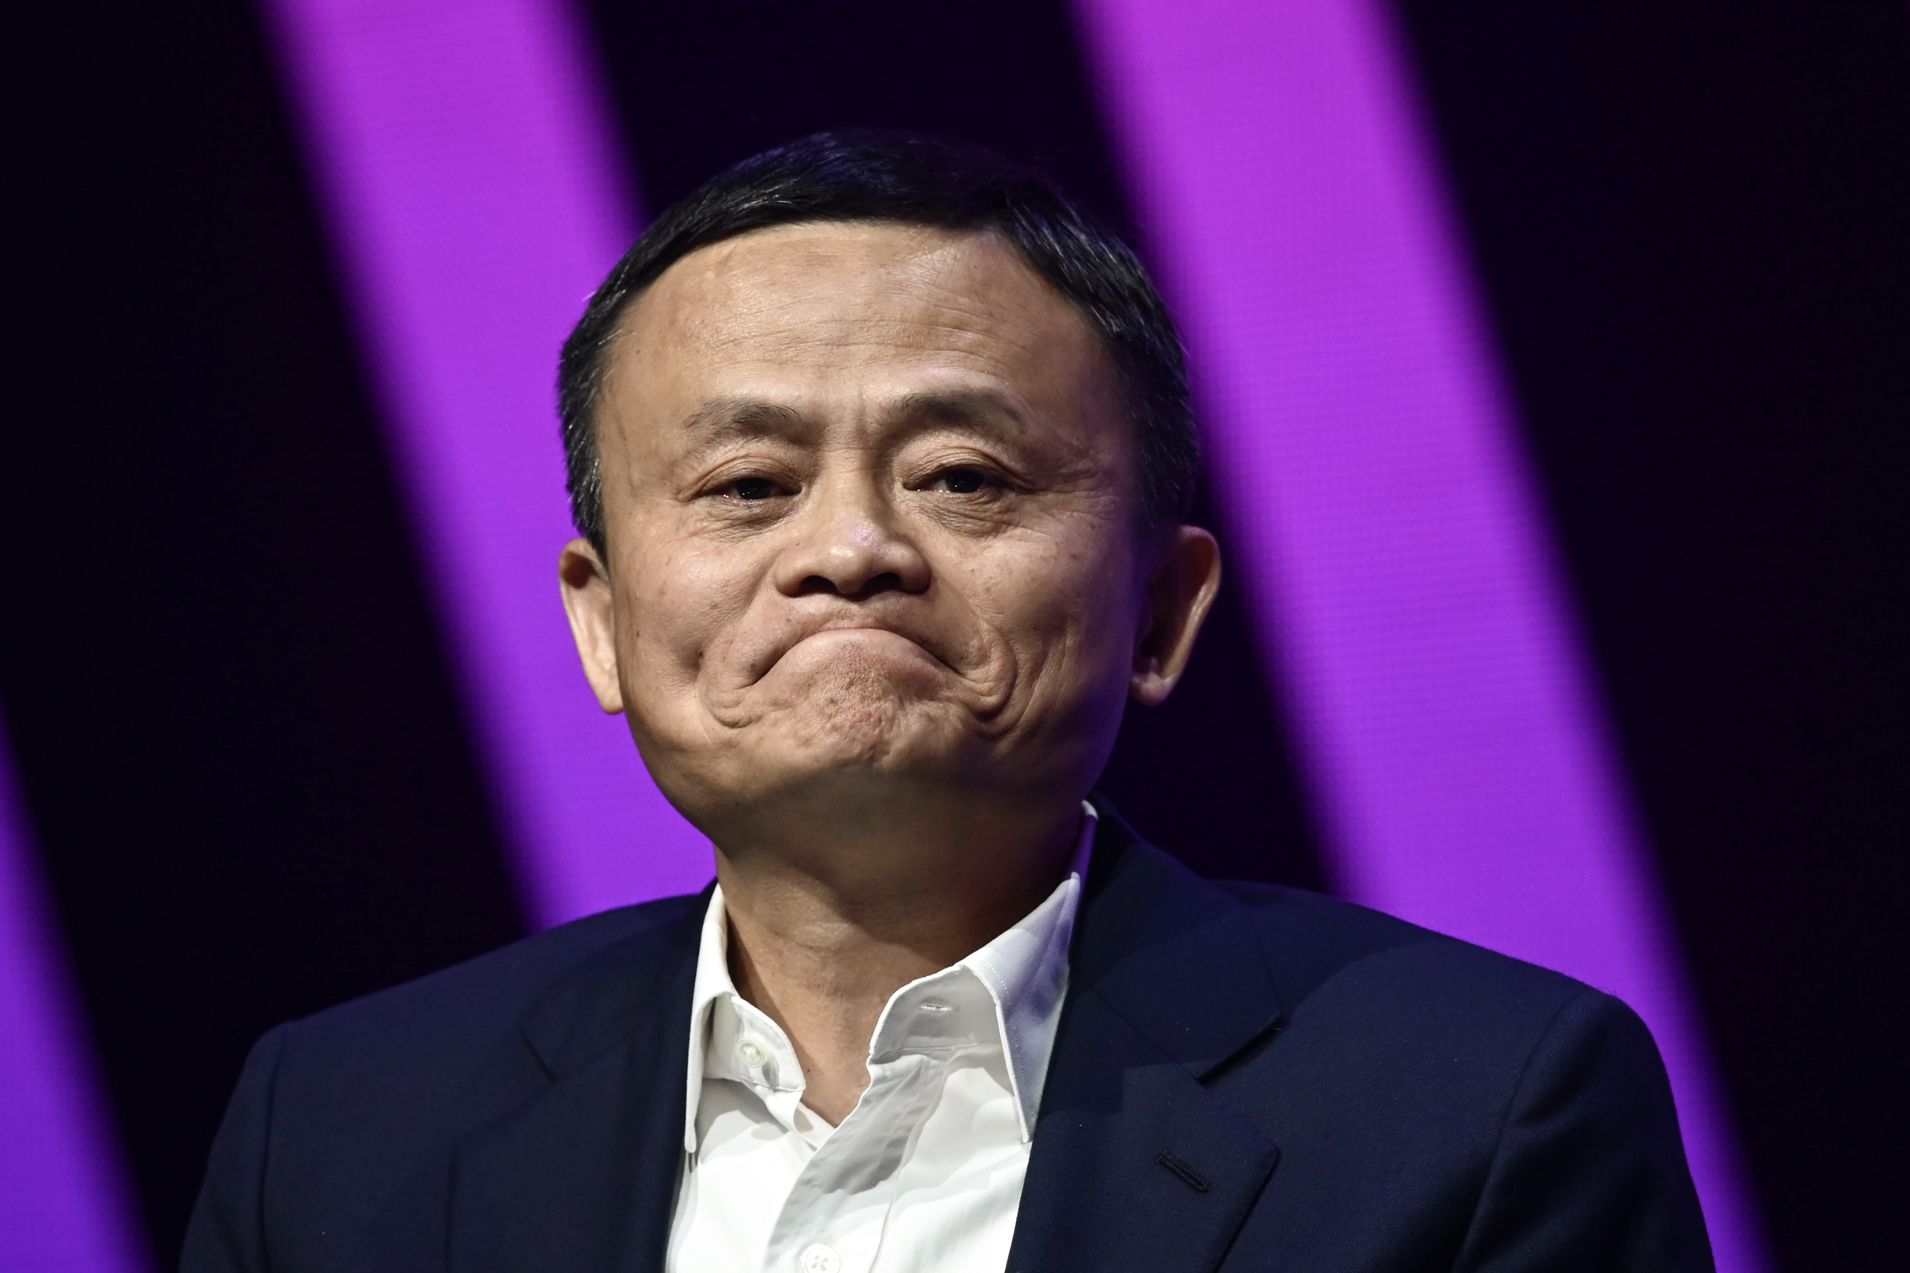 Hé lộ cuộc sống của tỷ phú Jack Ma trong 2 năm sóng gió